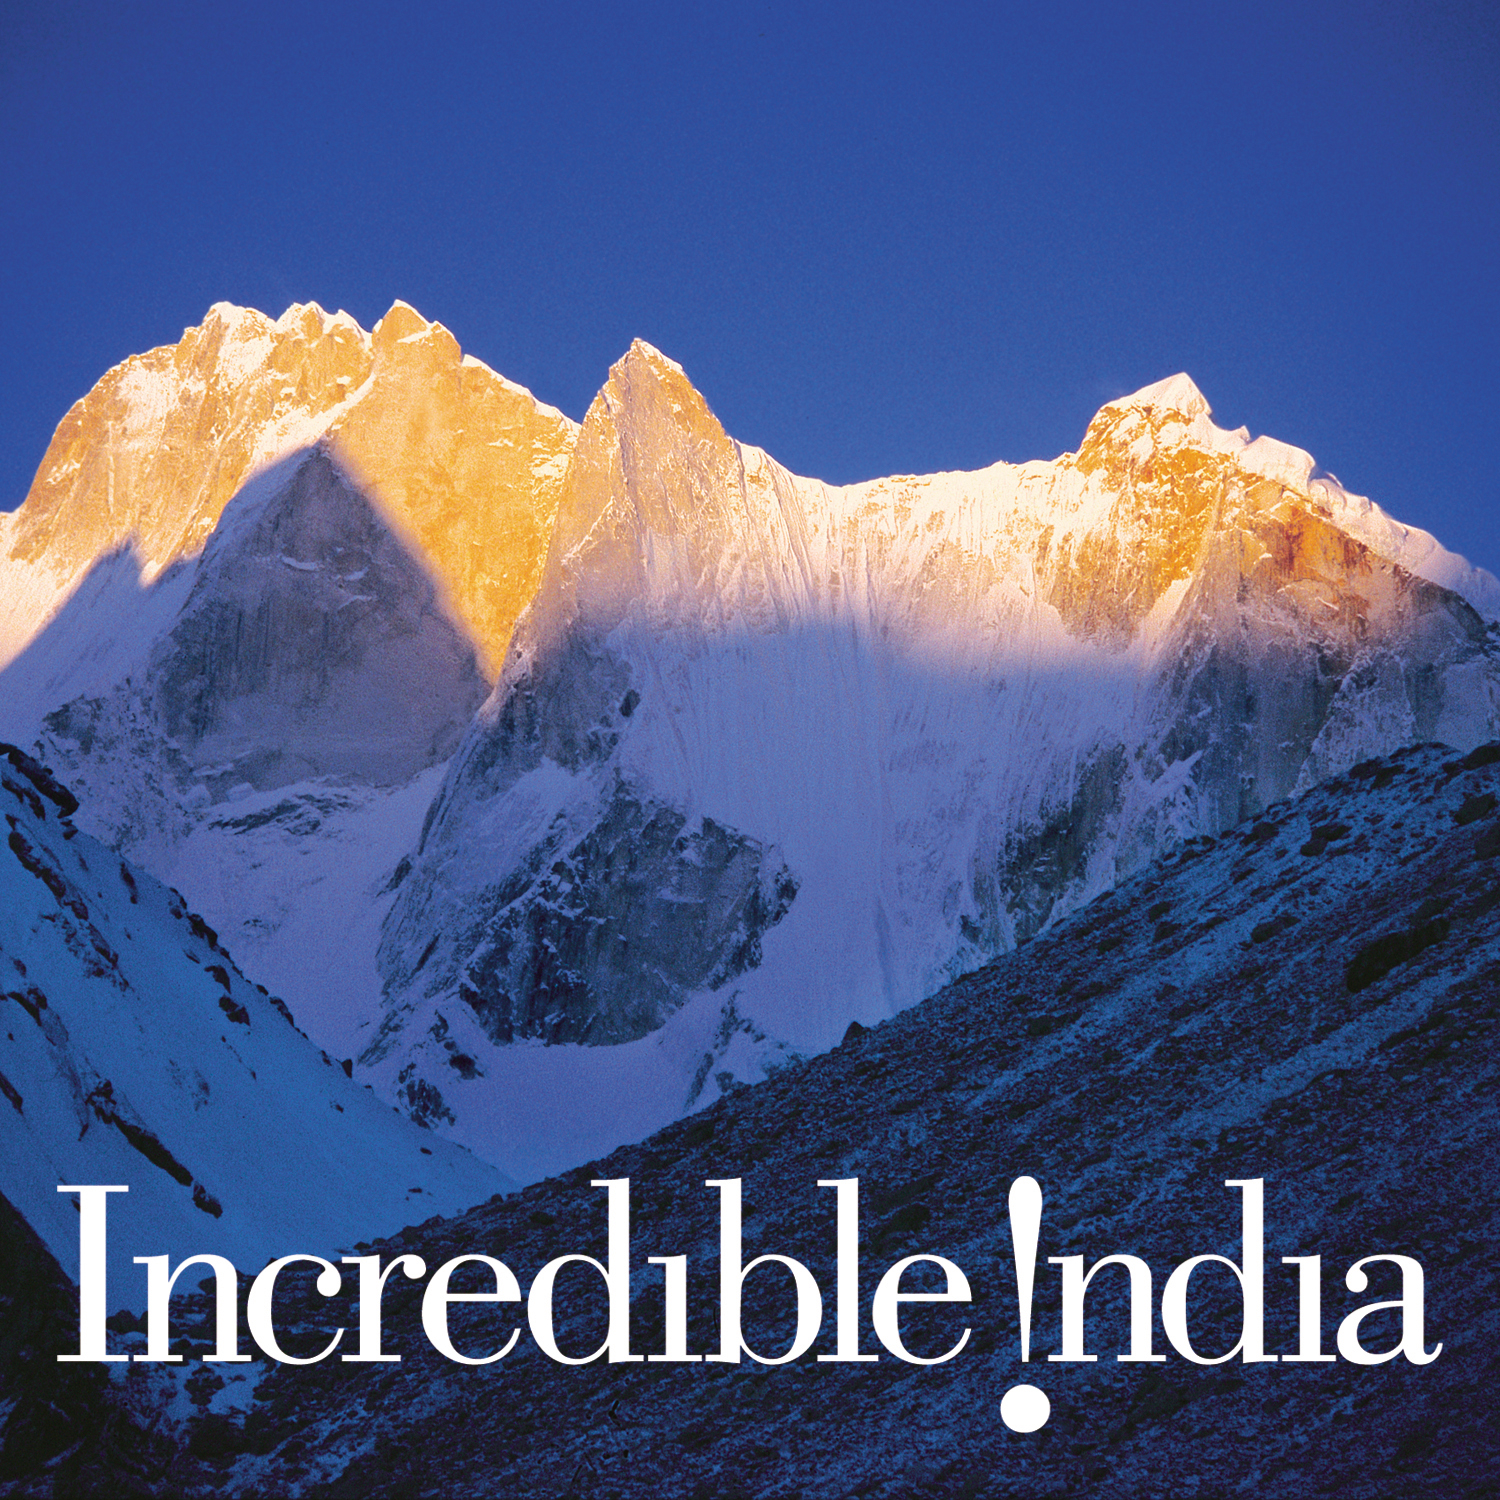 Склоны гималаев. Горы Гималаи. Индия горы Гималаи. Горная цепь Гималаи. Вершина Гималаев.